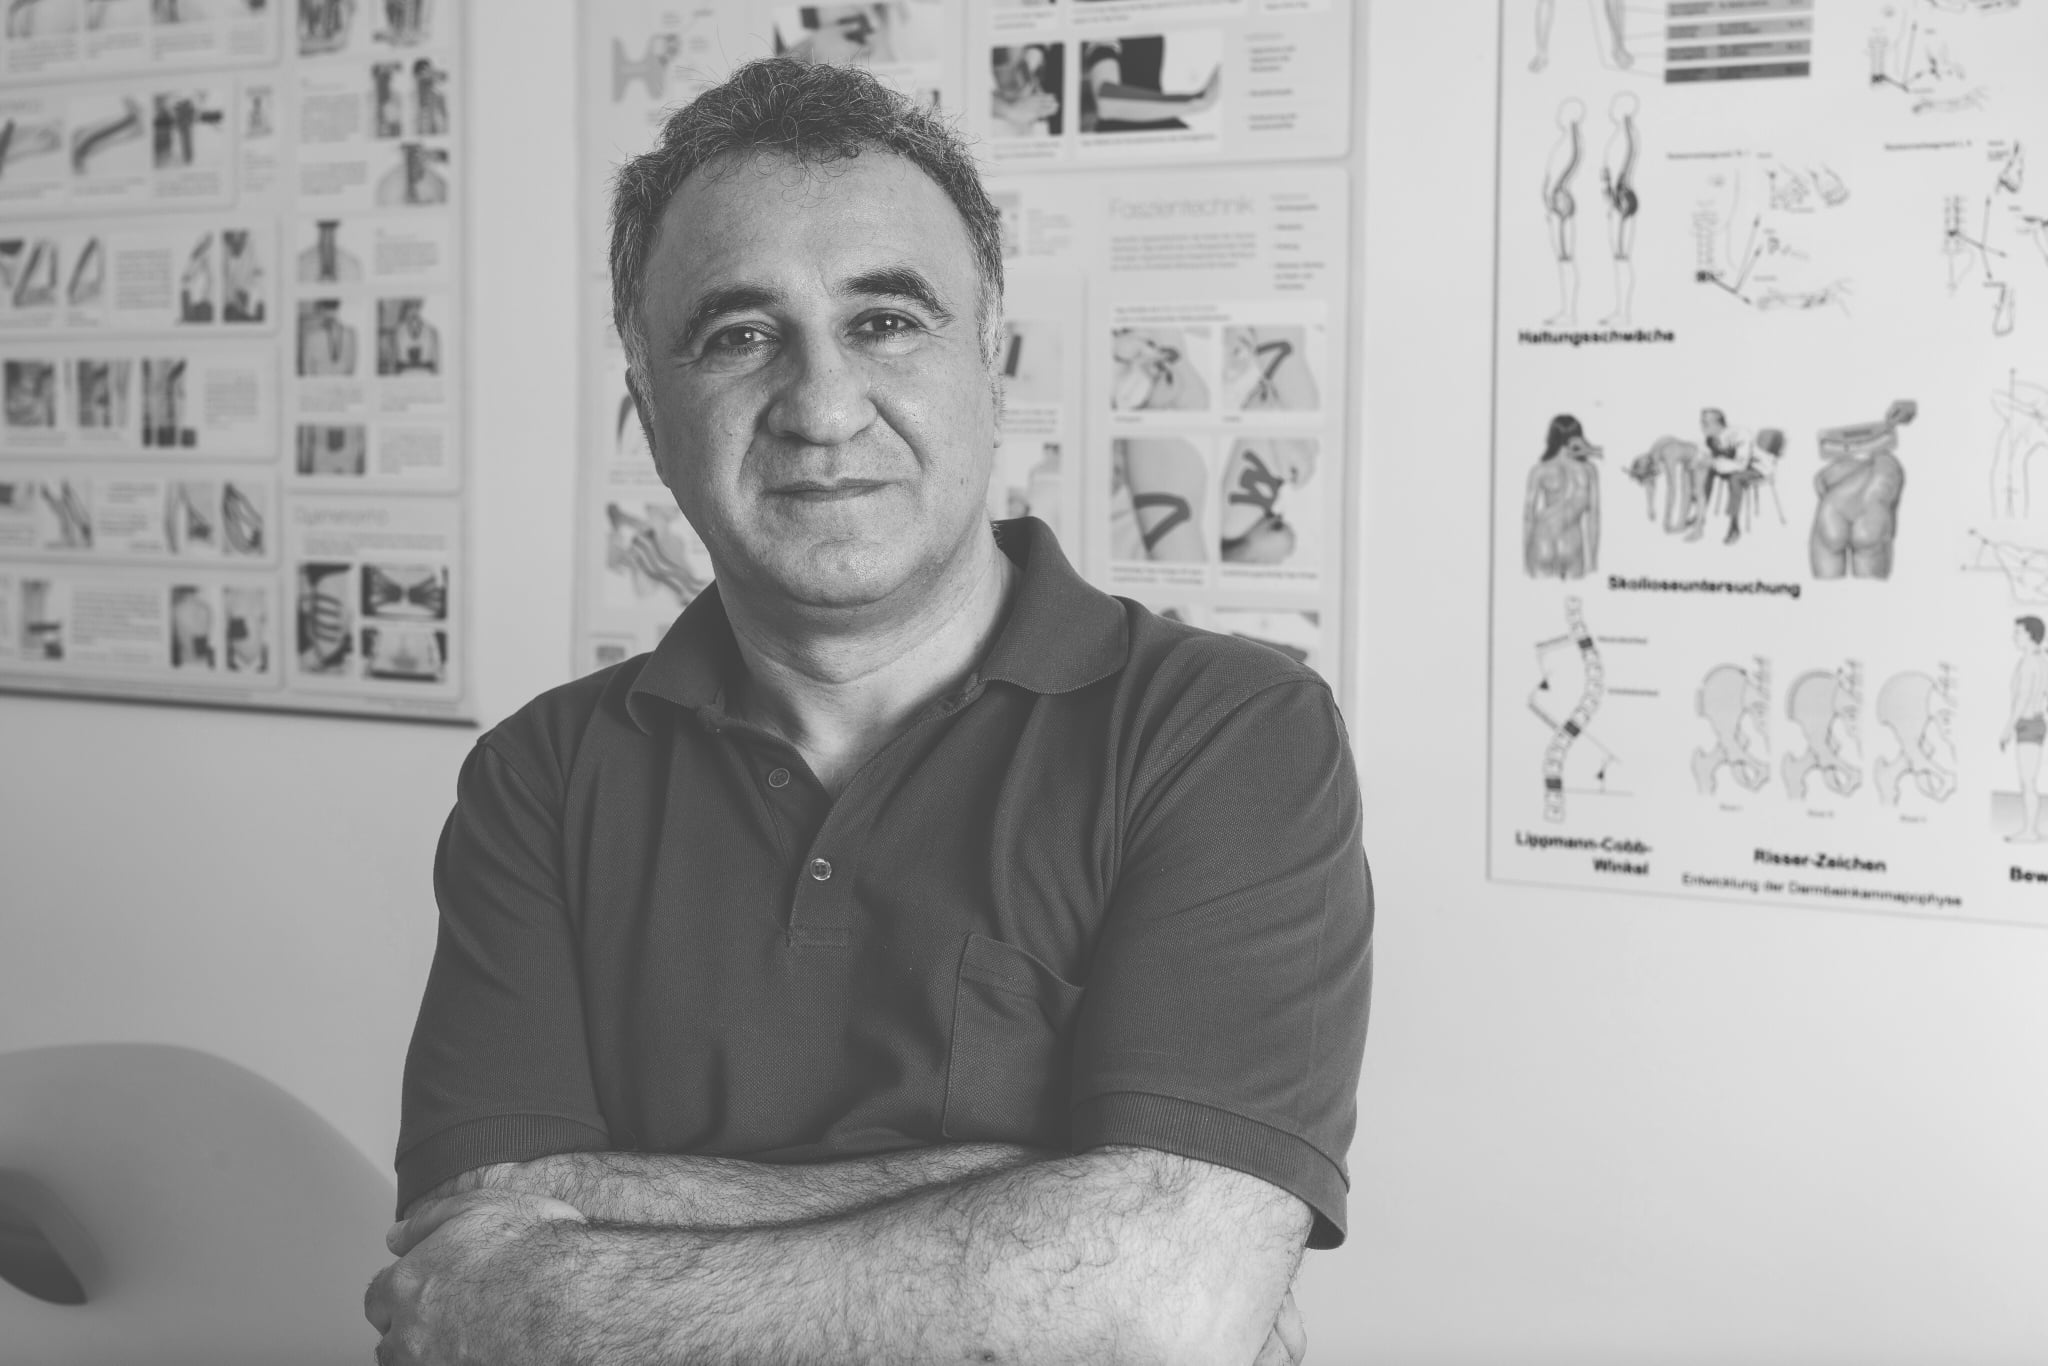 Dr. Ramin Ilbeygui - "Seit ich mit LATIDO arbeite, habe ich das Gefühl, dass ich mich komplett auf den Patienten konzentrieren kann."